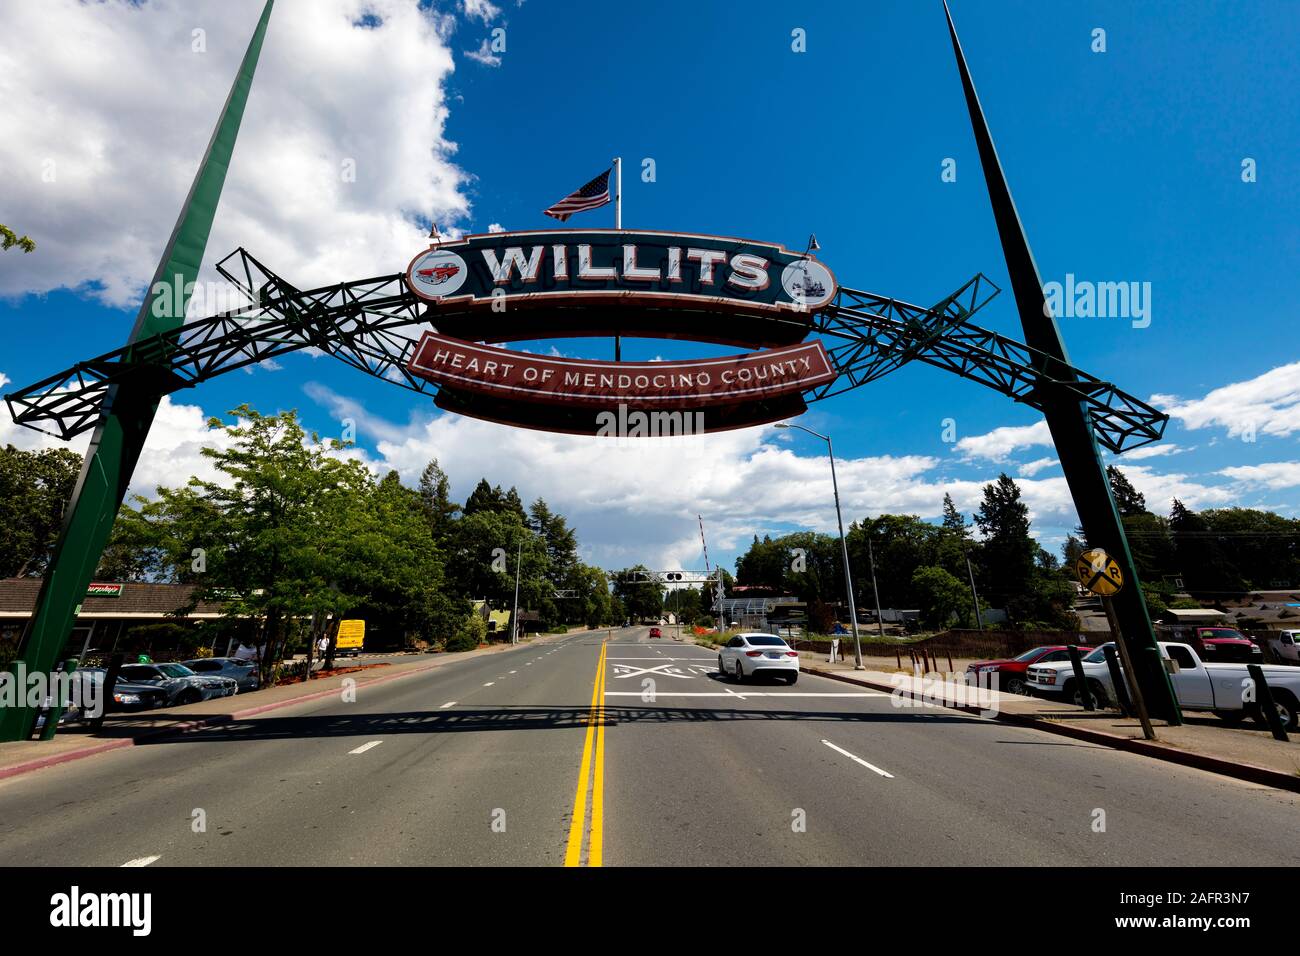 Juni 1, 2019, Willits, Kalifornien, USA - Willkommen in Willits, Kalifornien, "Herz von Mendocino County" Stockfoto